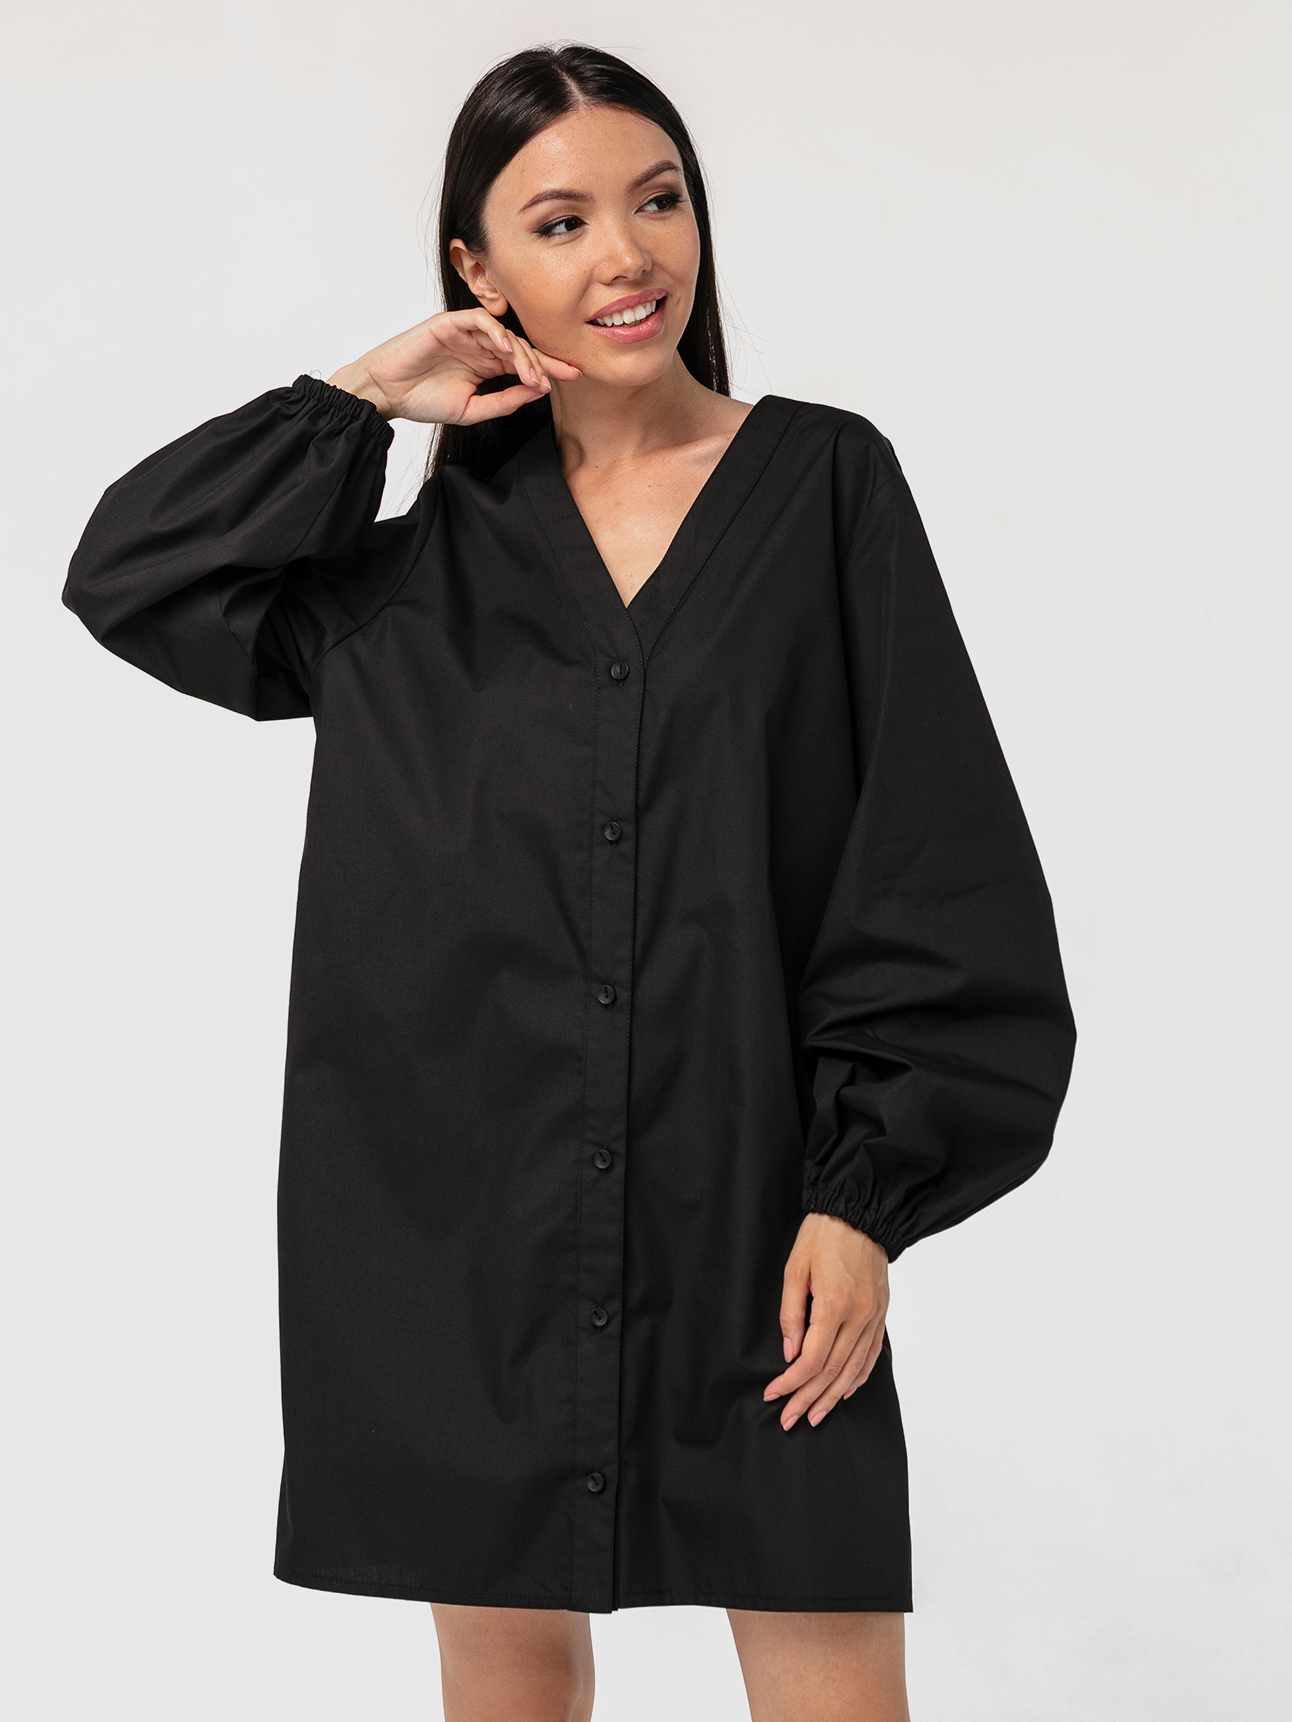 Платье-рубашка хлопковое с объемными рукавами черное YOS от украинского бренда Your Own Style